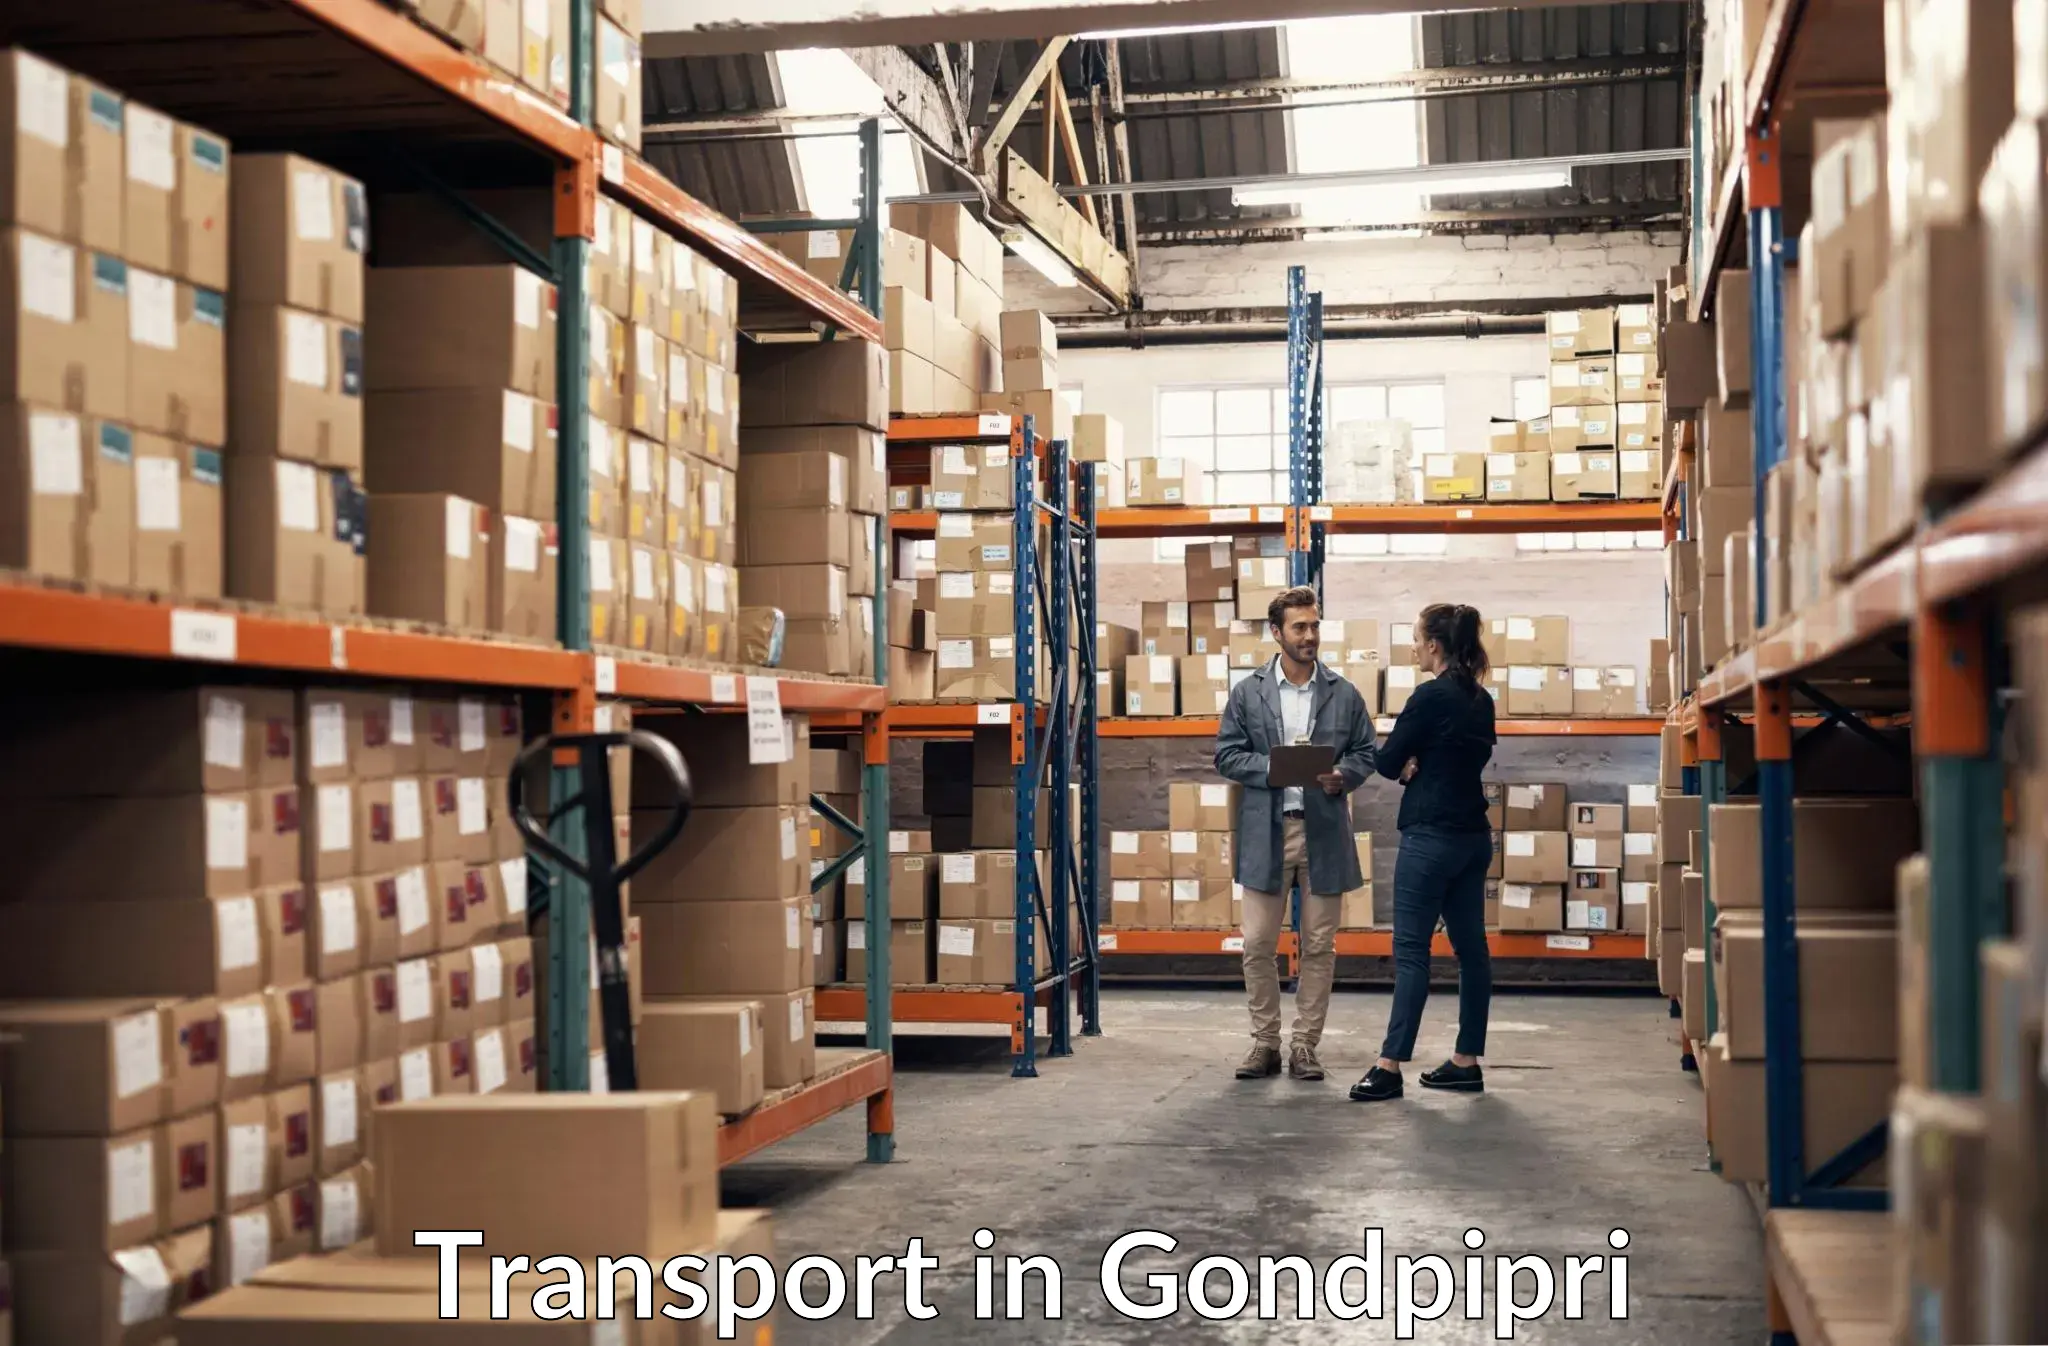 Cargo train transport services in Gondpipri